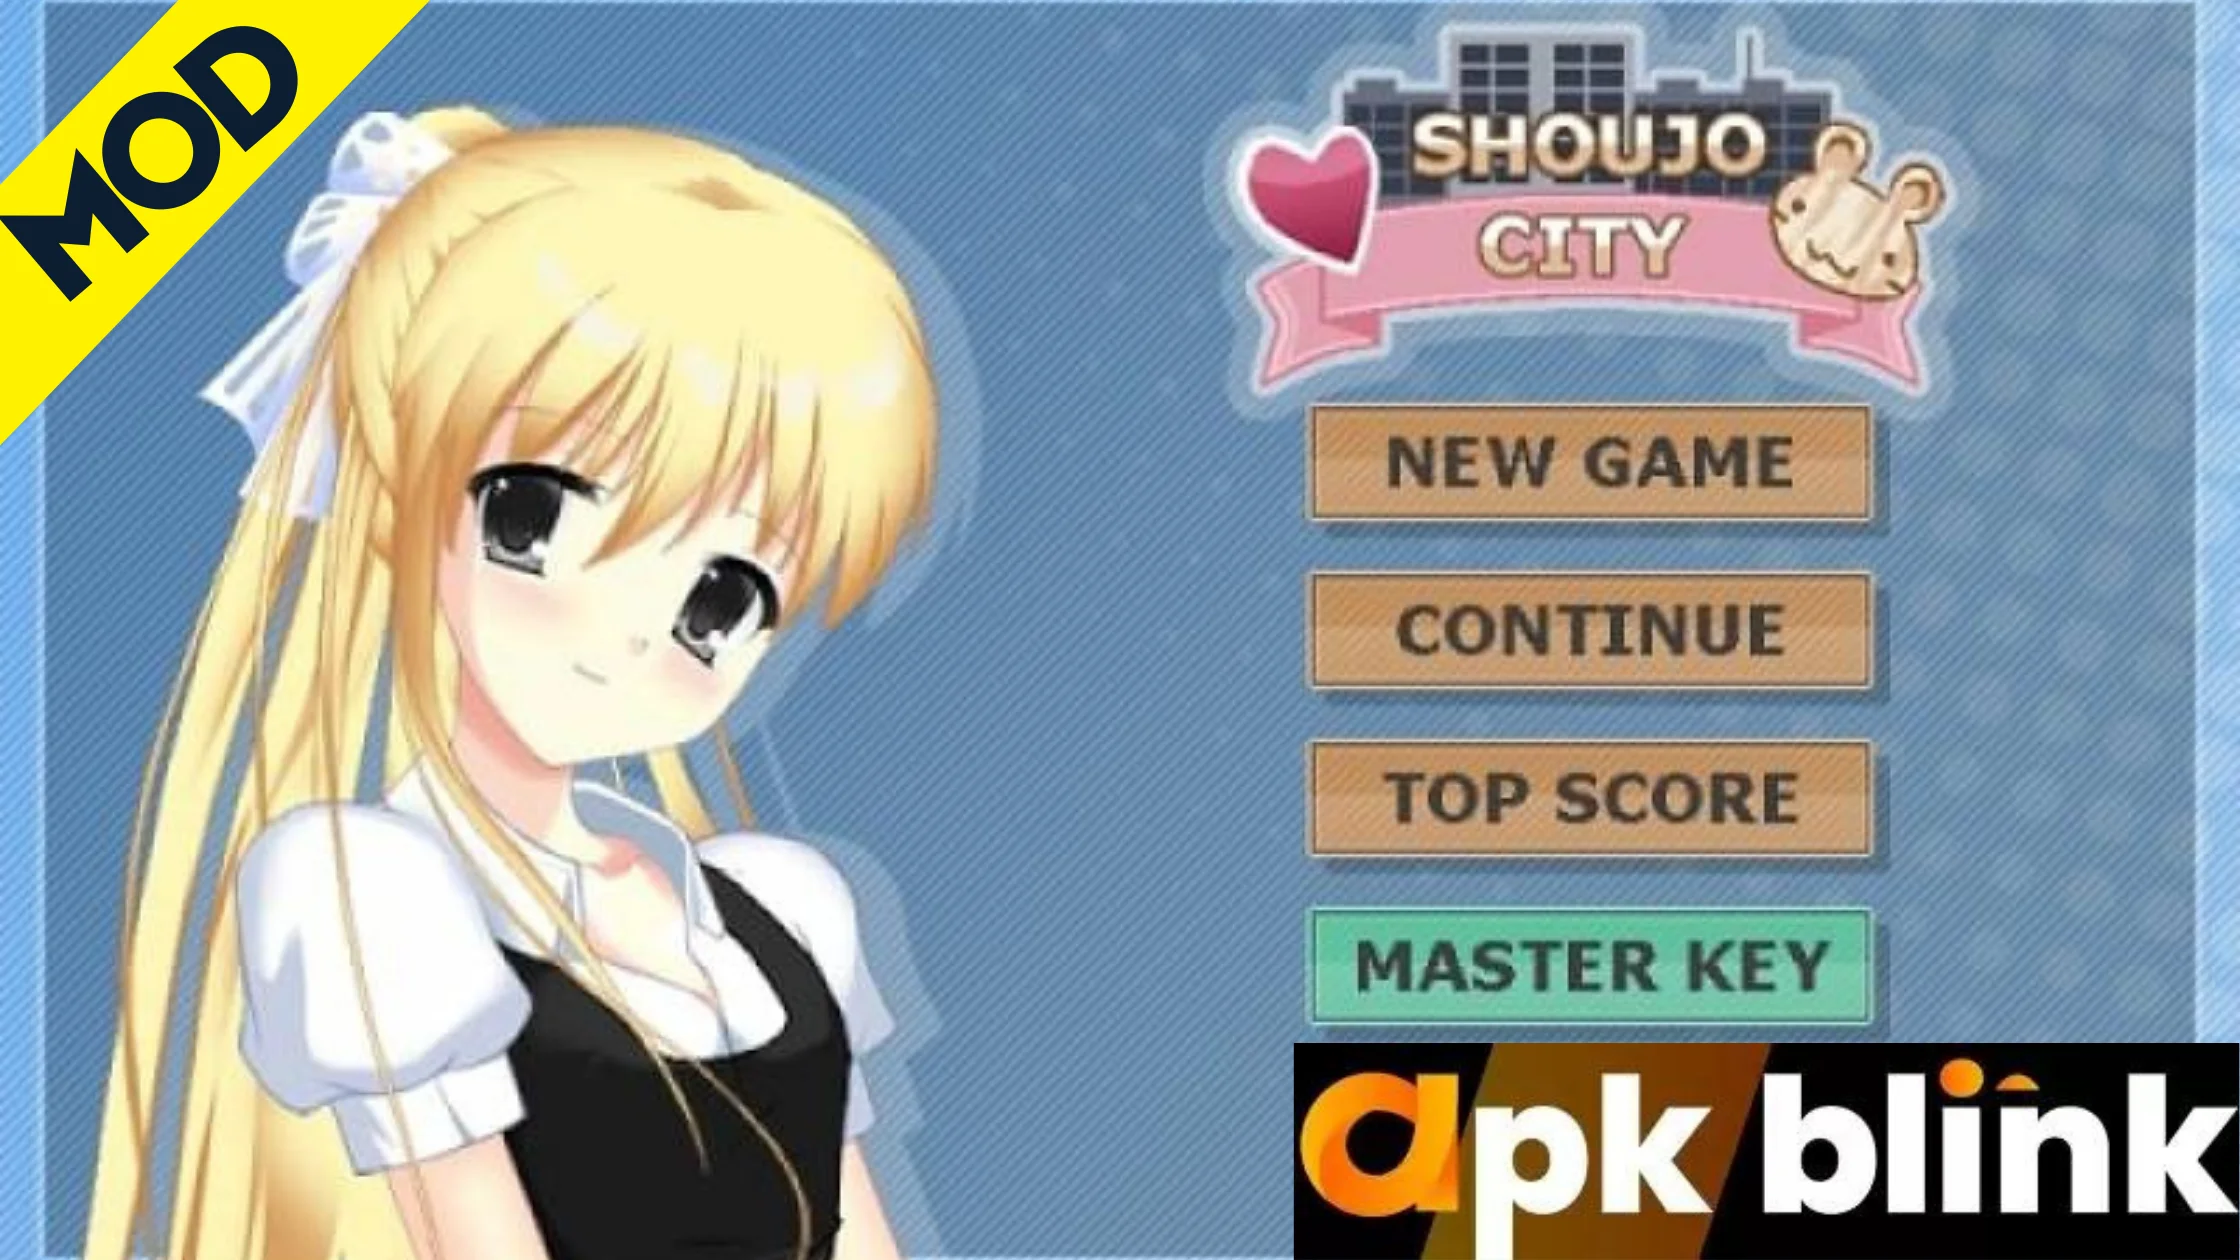 Shoujo City 3D Mod APK